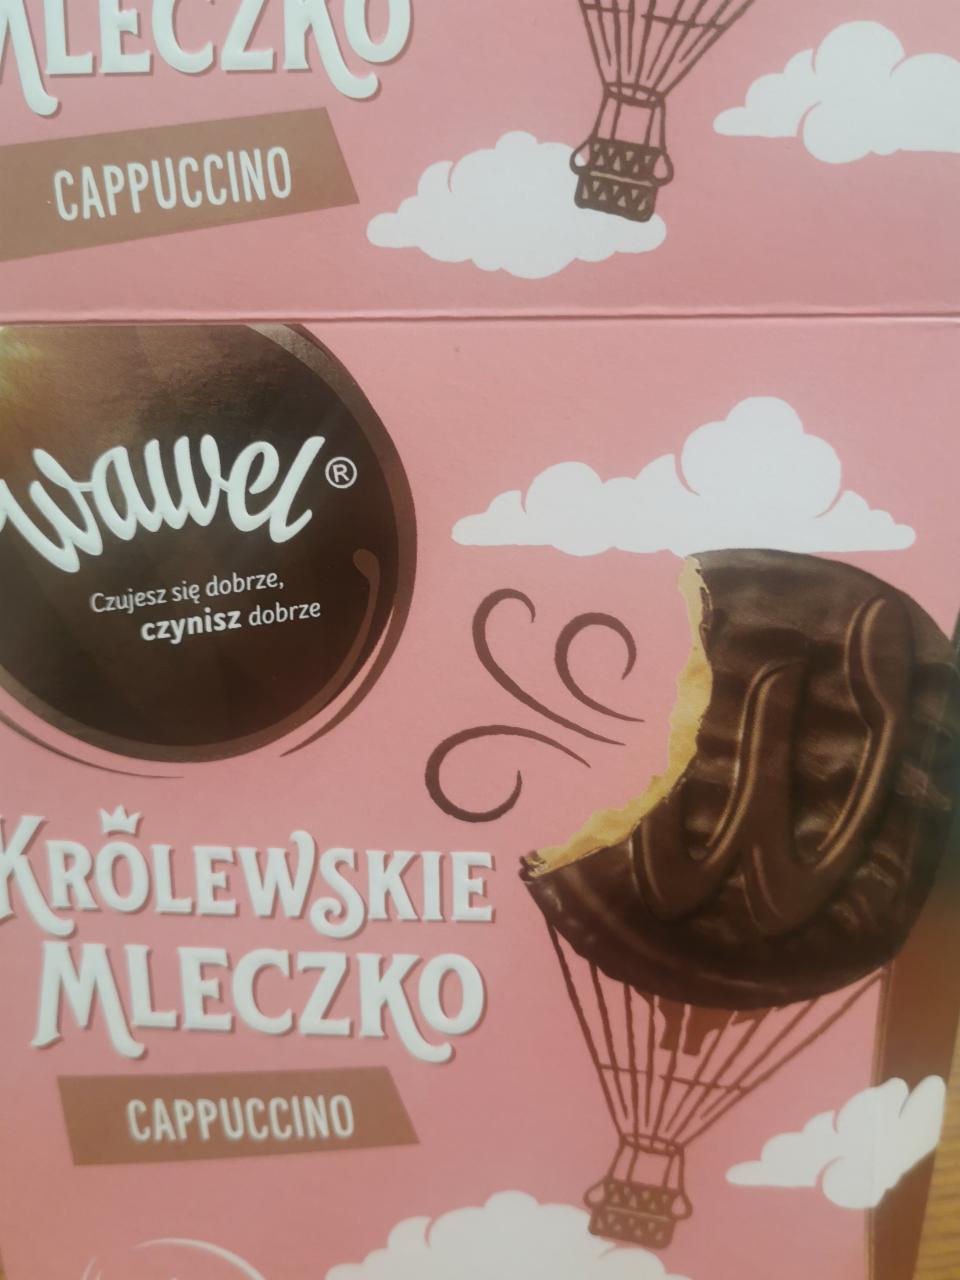 Fotografie - Krolewskie mleczko cappuccino Wawel